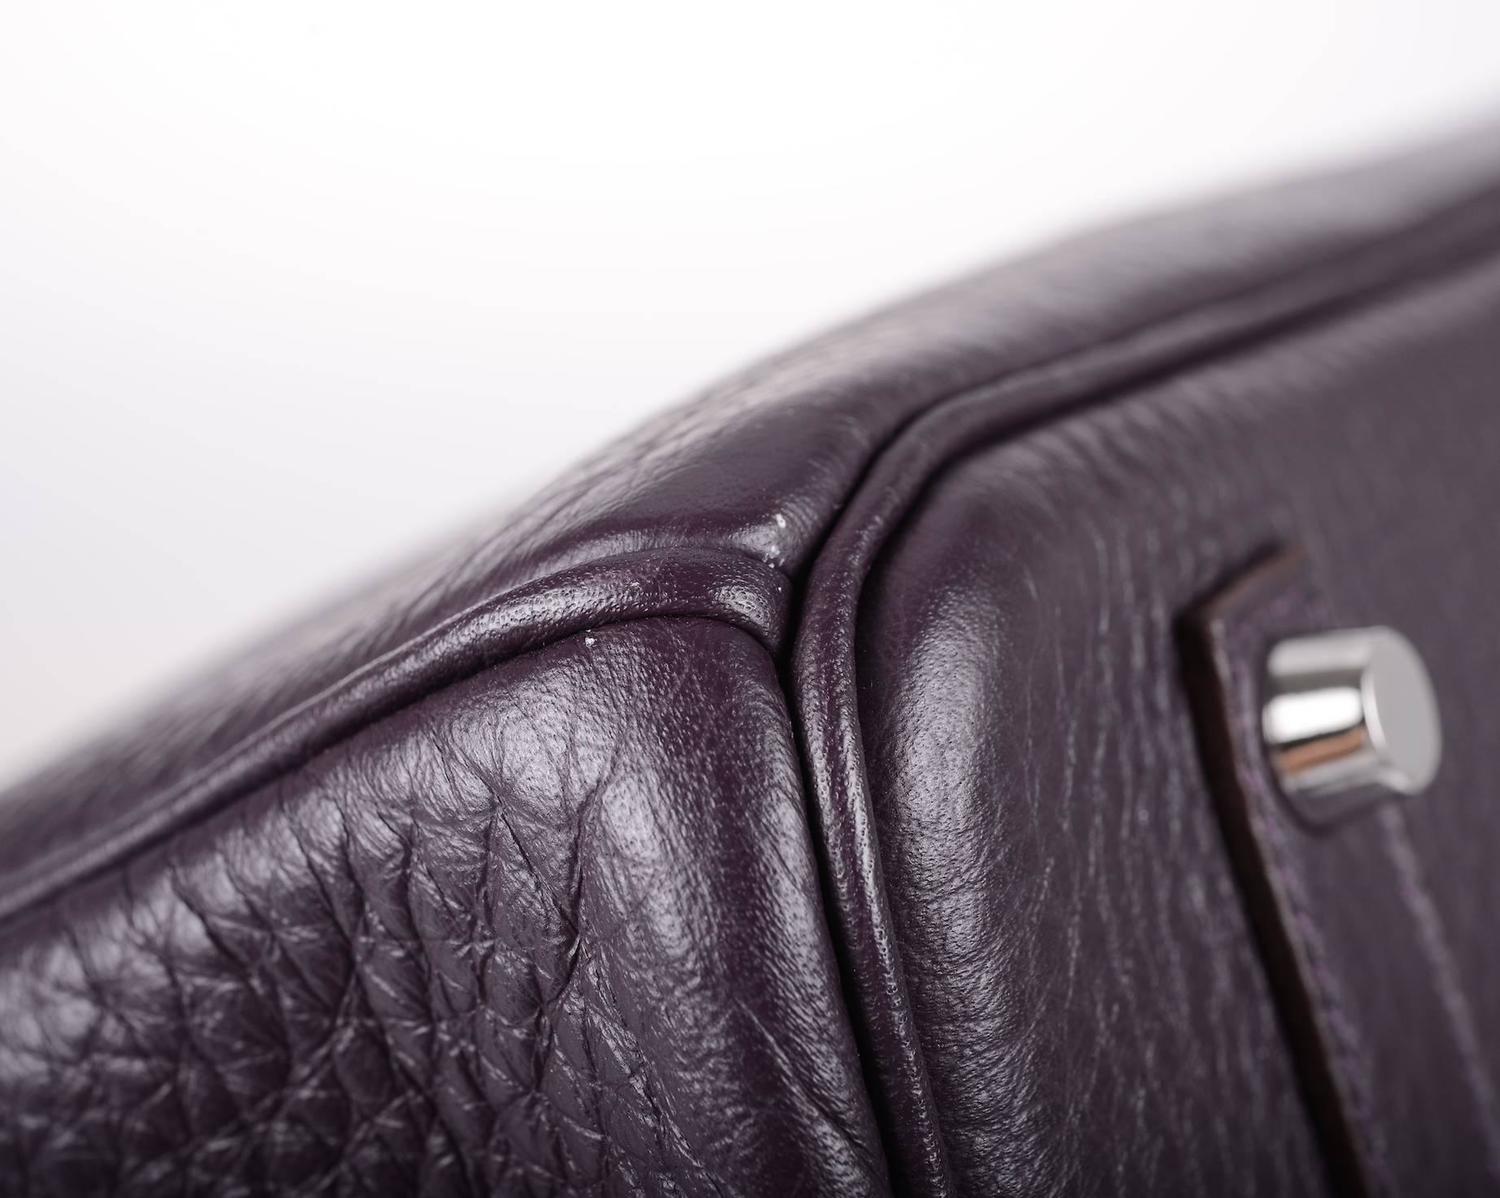 faux ostrich leather handbags - Hermes 35cm Birkin Bag Raisin Togo palladium hardware JaneFinds ...